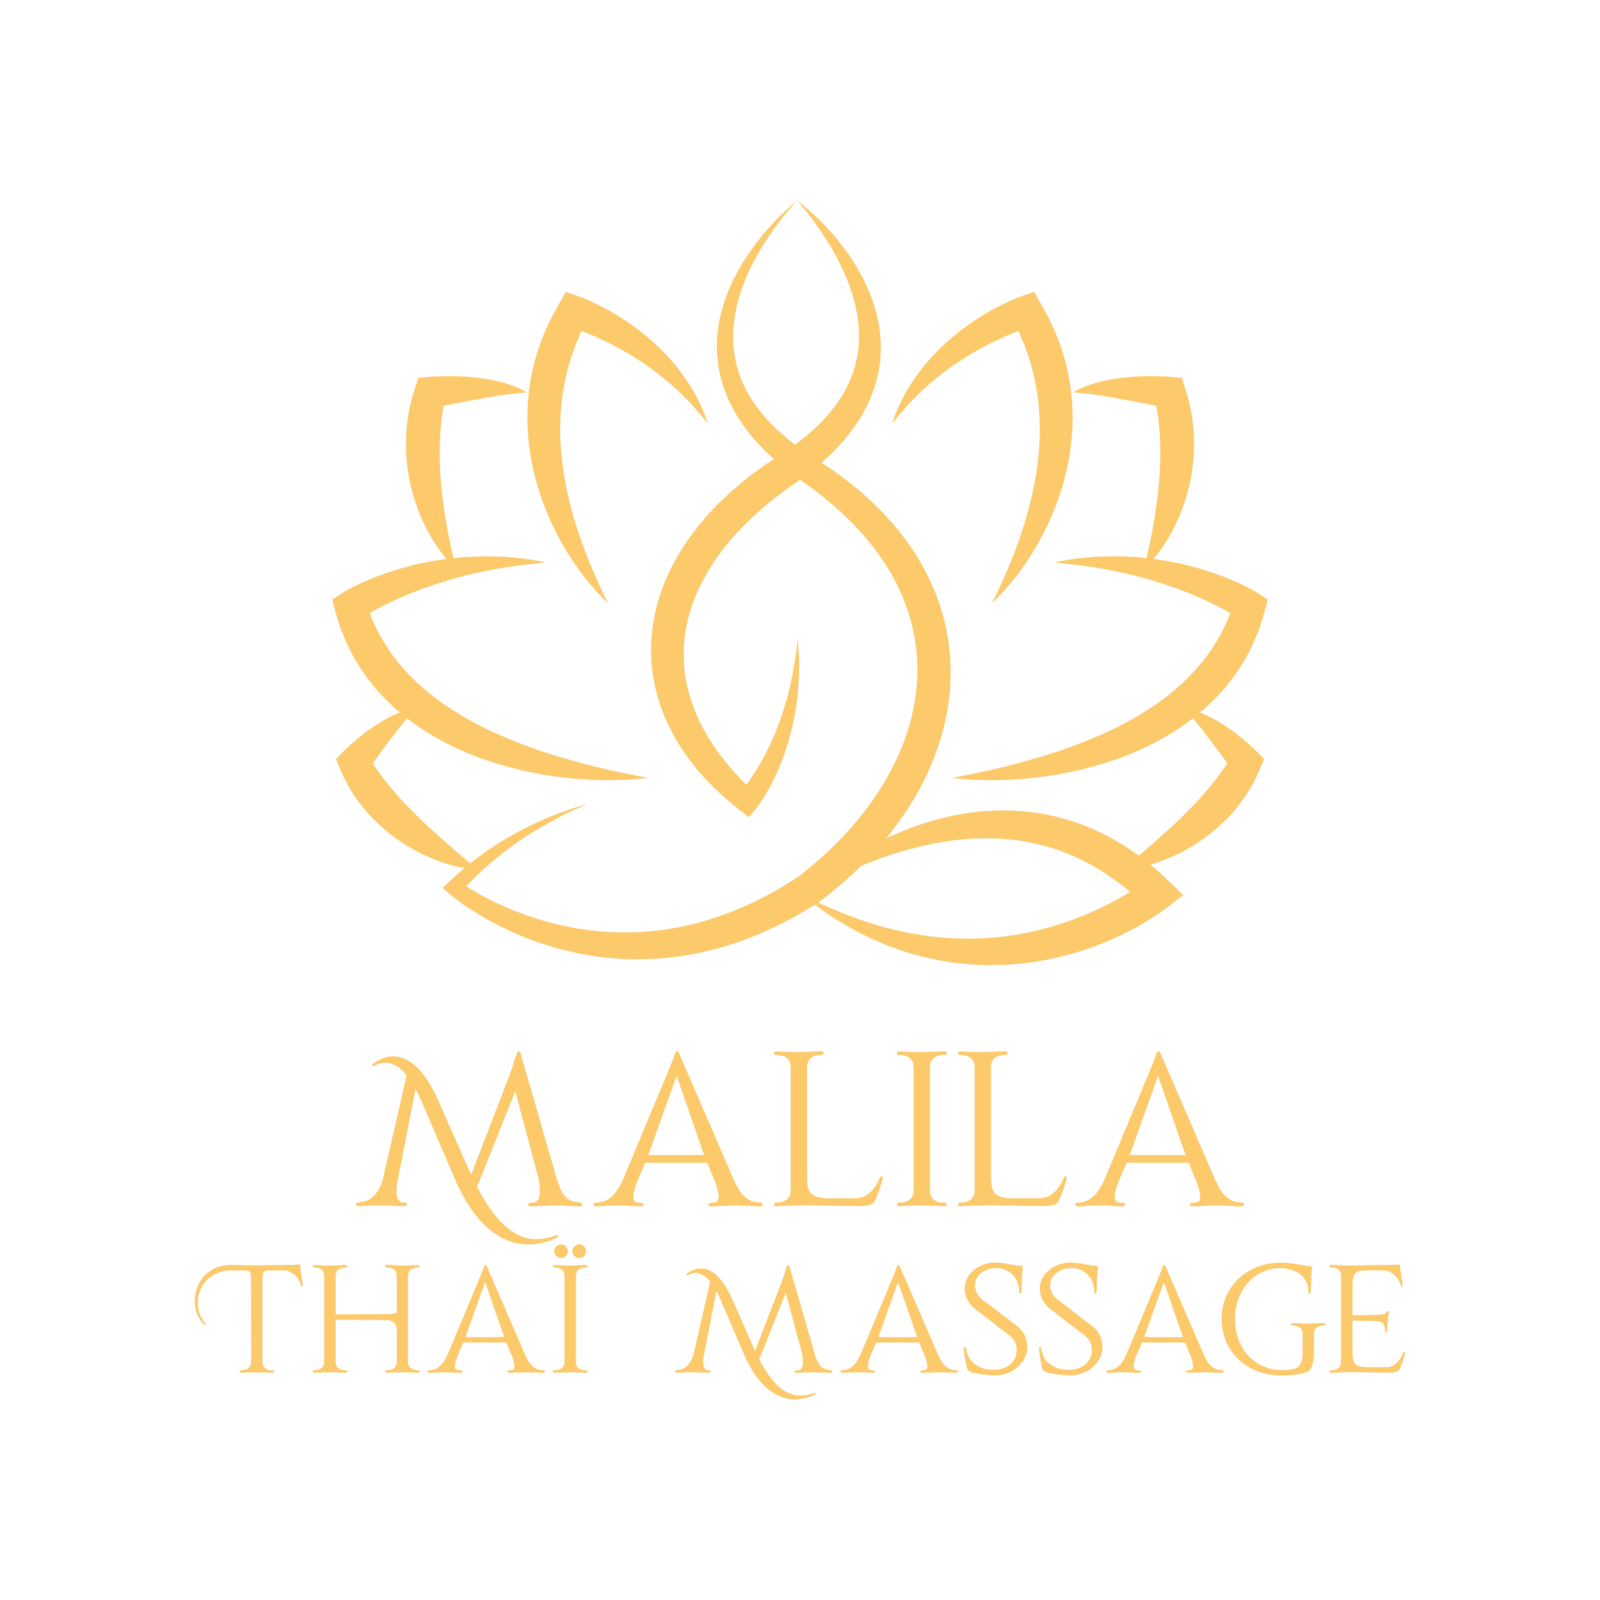 Malila Thaï Massage